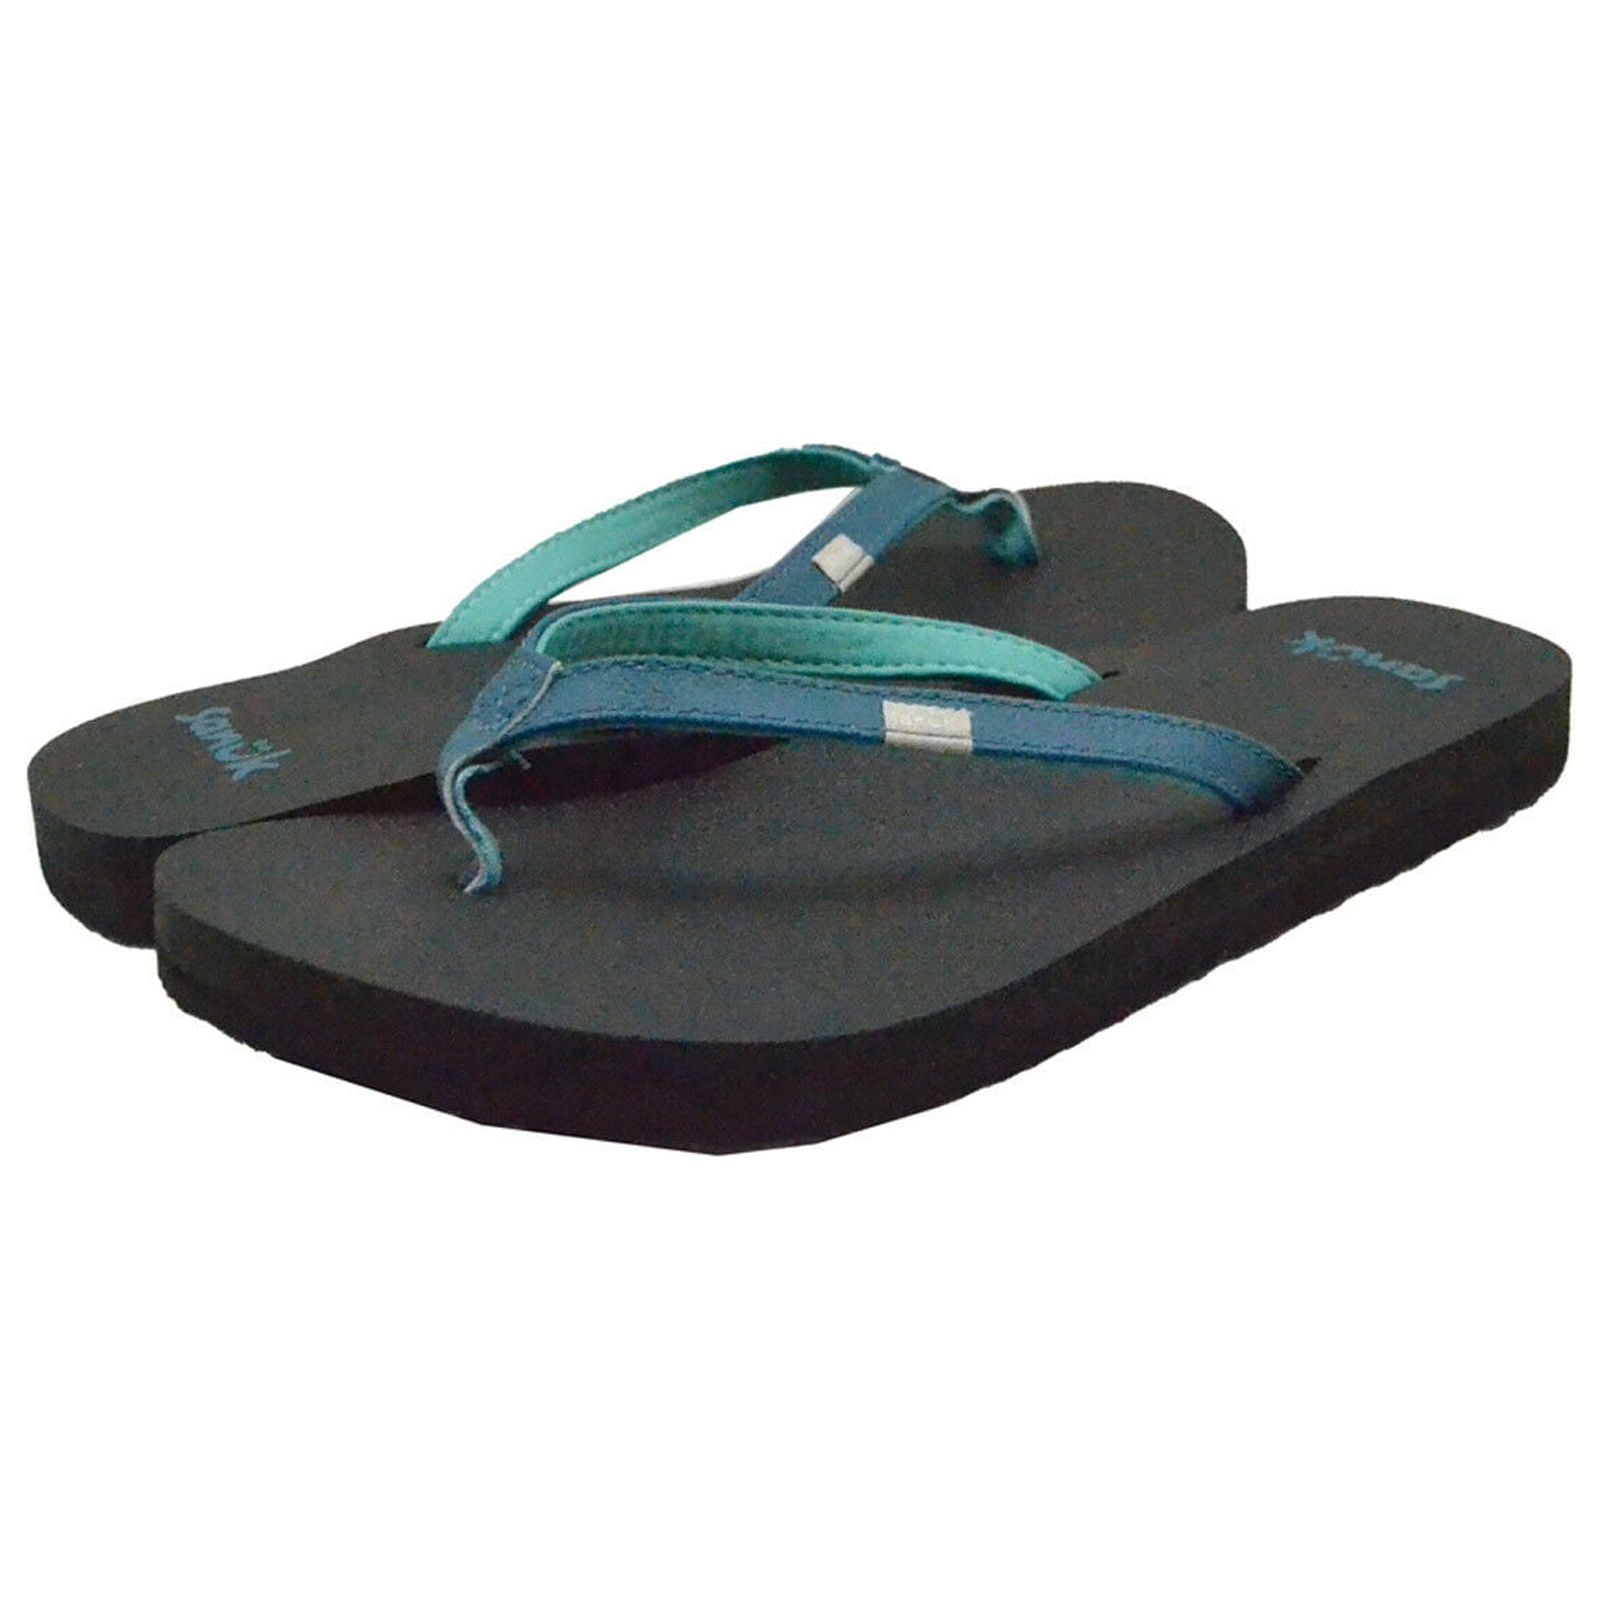 Sanuk Women's Shoes Yoga Joy Flip Flop Toe Post Sandals SWS10275